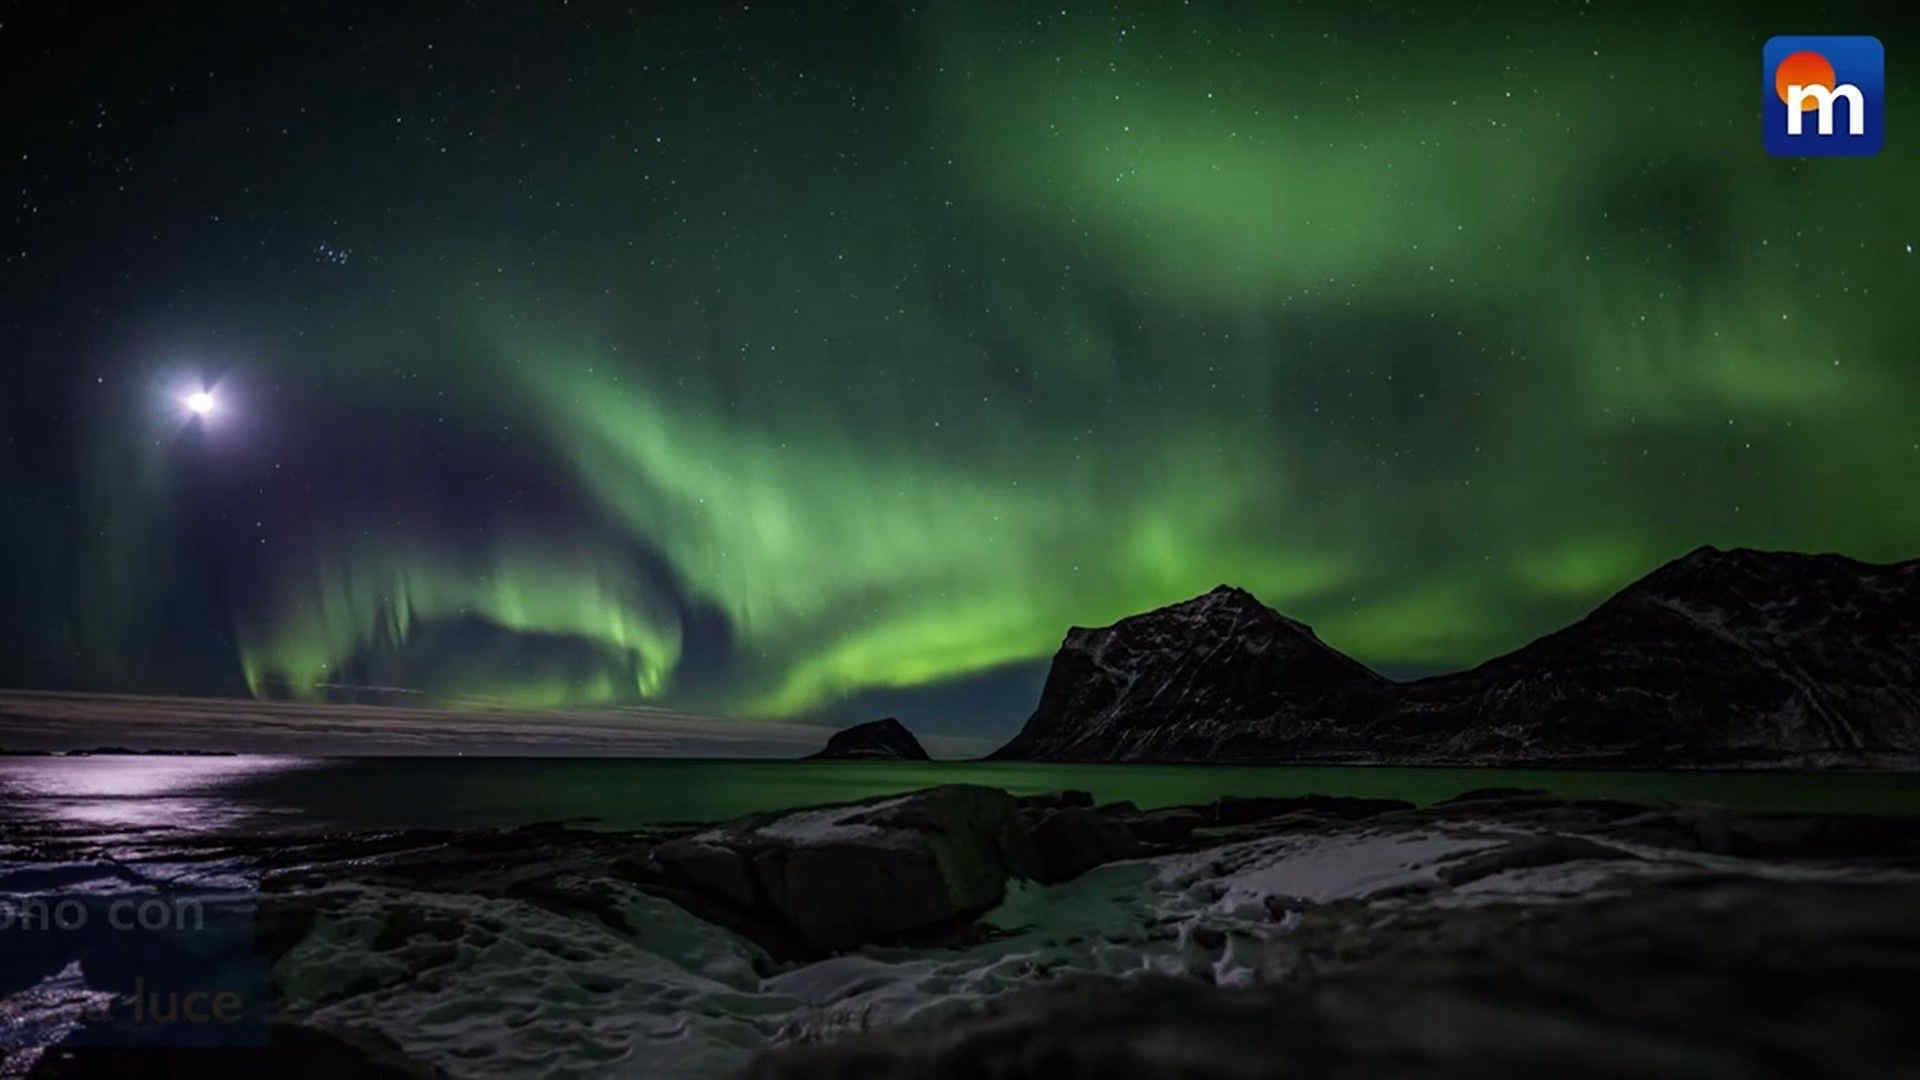 A giugno le aurore boreali (polari) potrebbero tornare anche a latitudini insolite